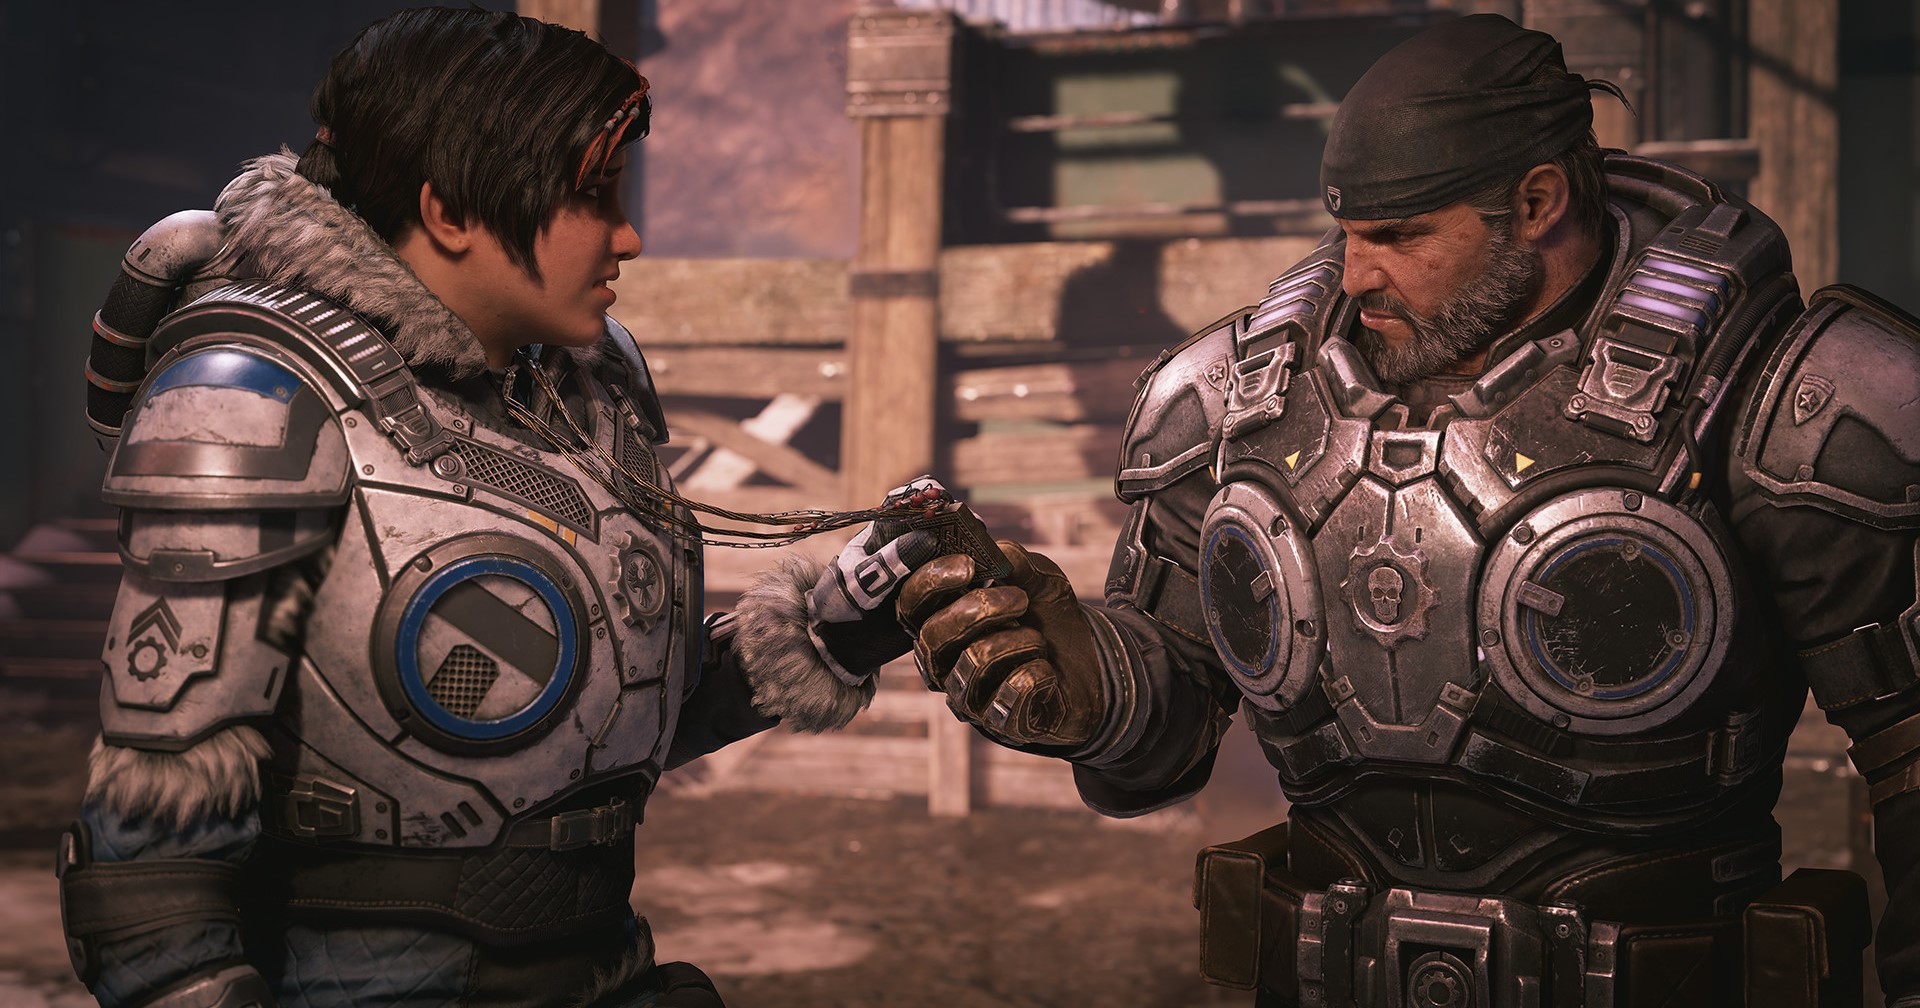 Xbox เผยทีมสร้าง Gears of War กำลังพัฒนาเกมใหม่ ๆ จำนวนมาก